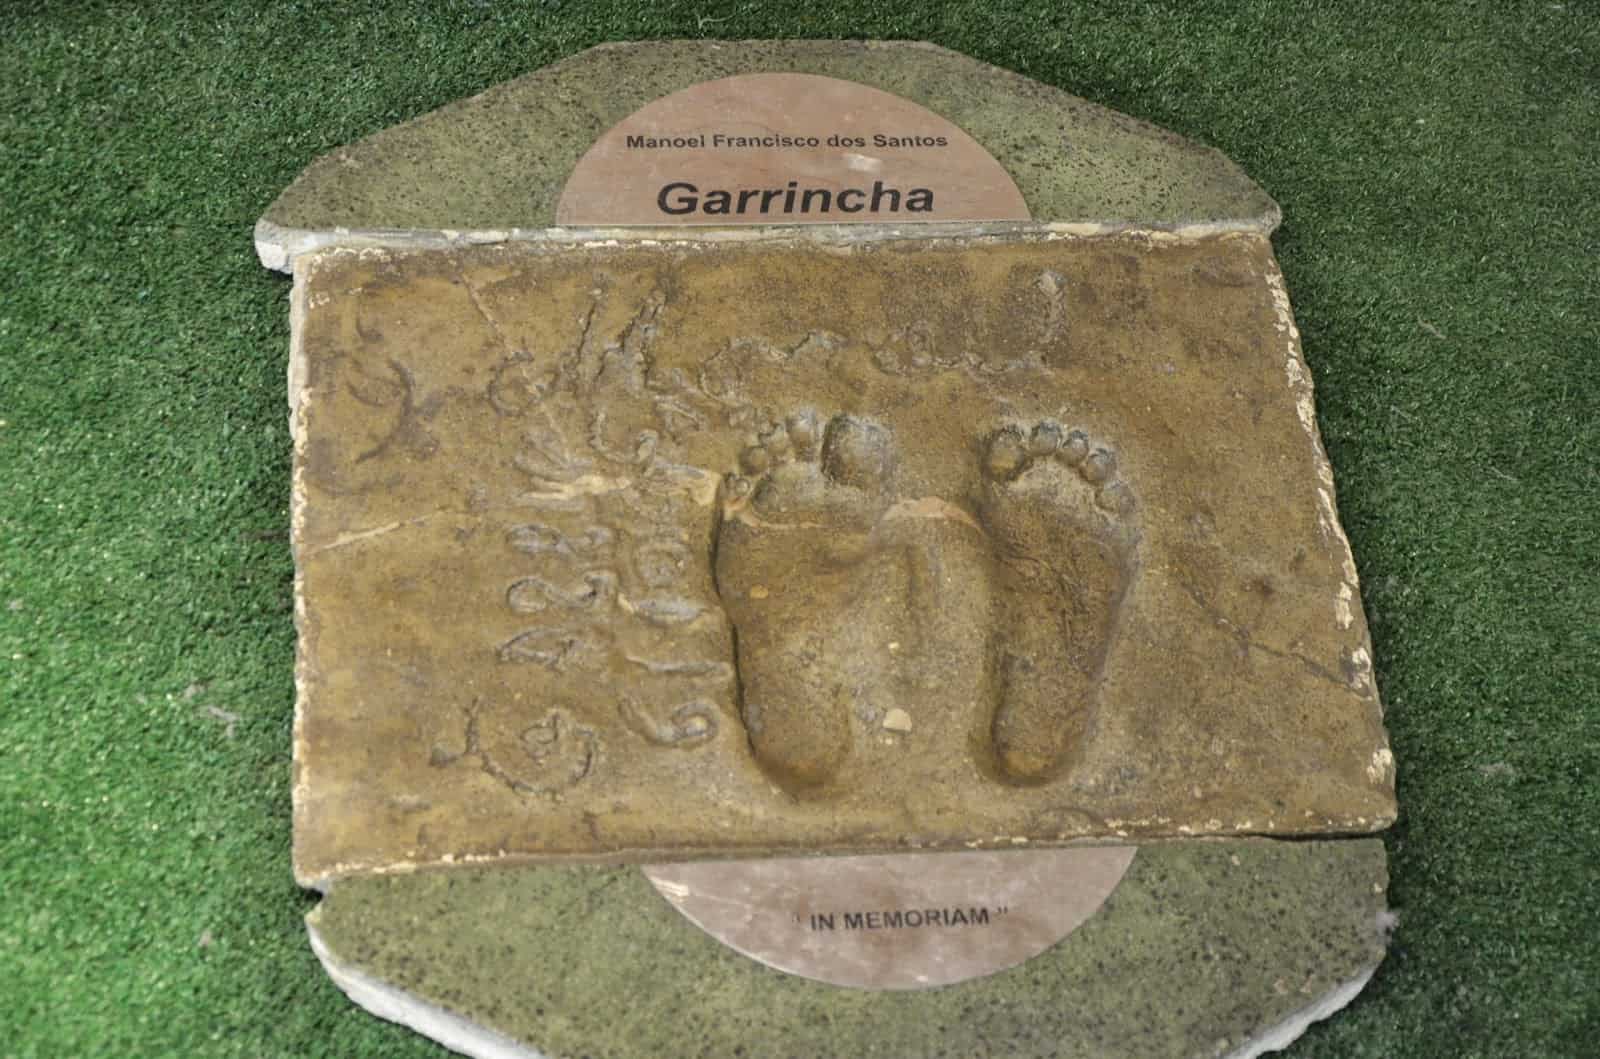 Garrincha's footprint at Estádio do Maracanã in Rio de Janeiro, Brazil